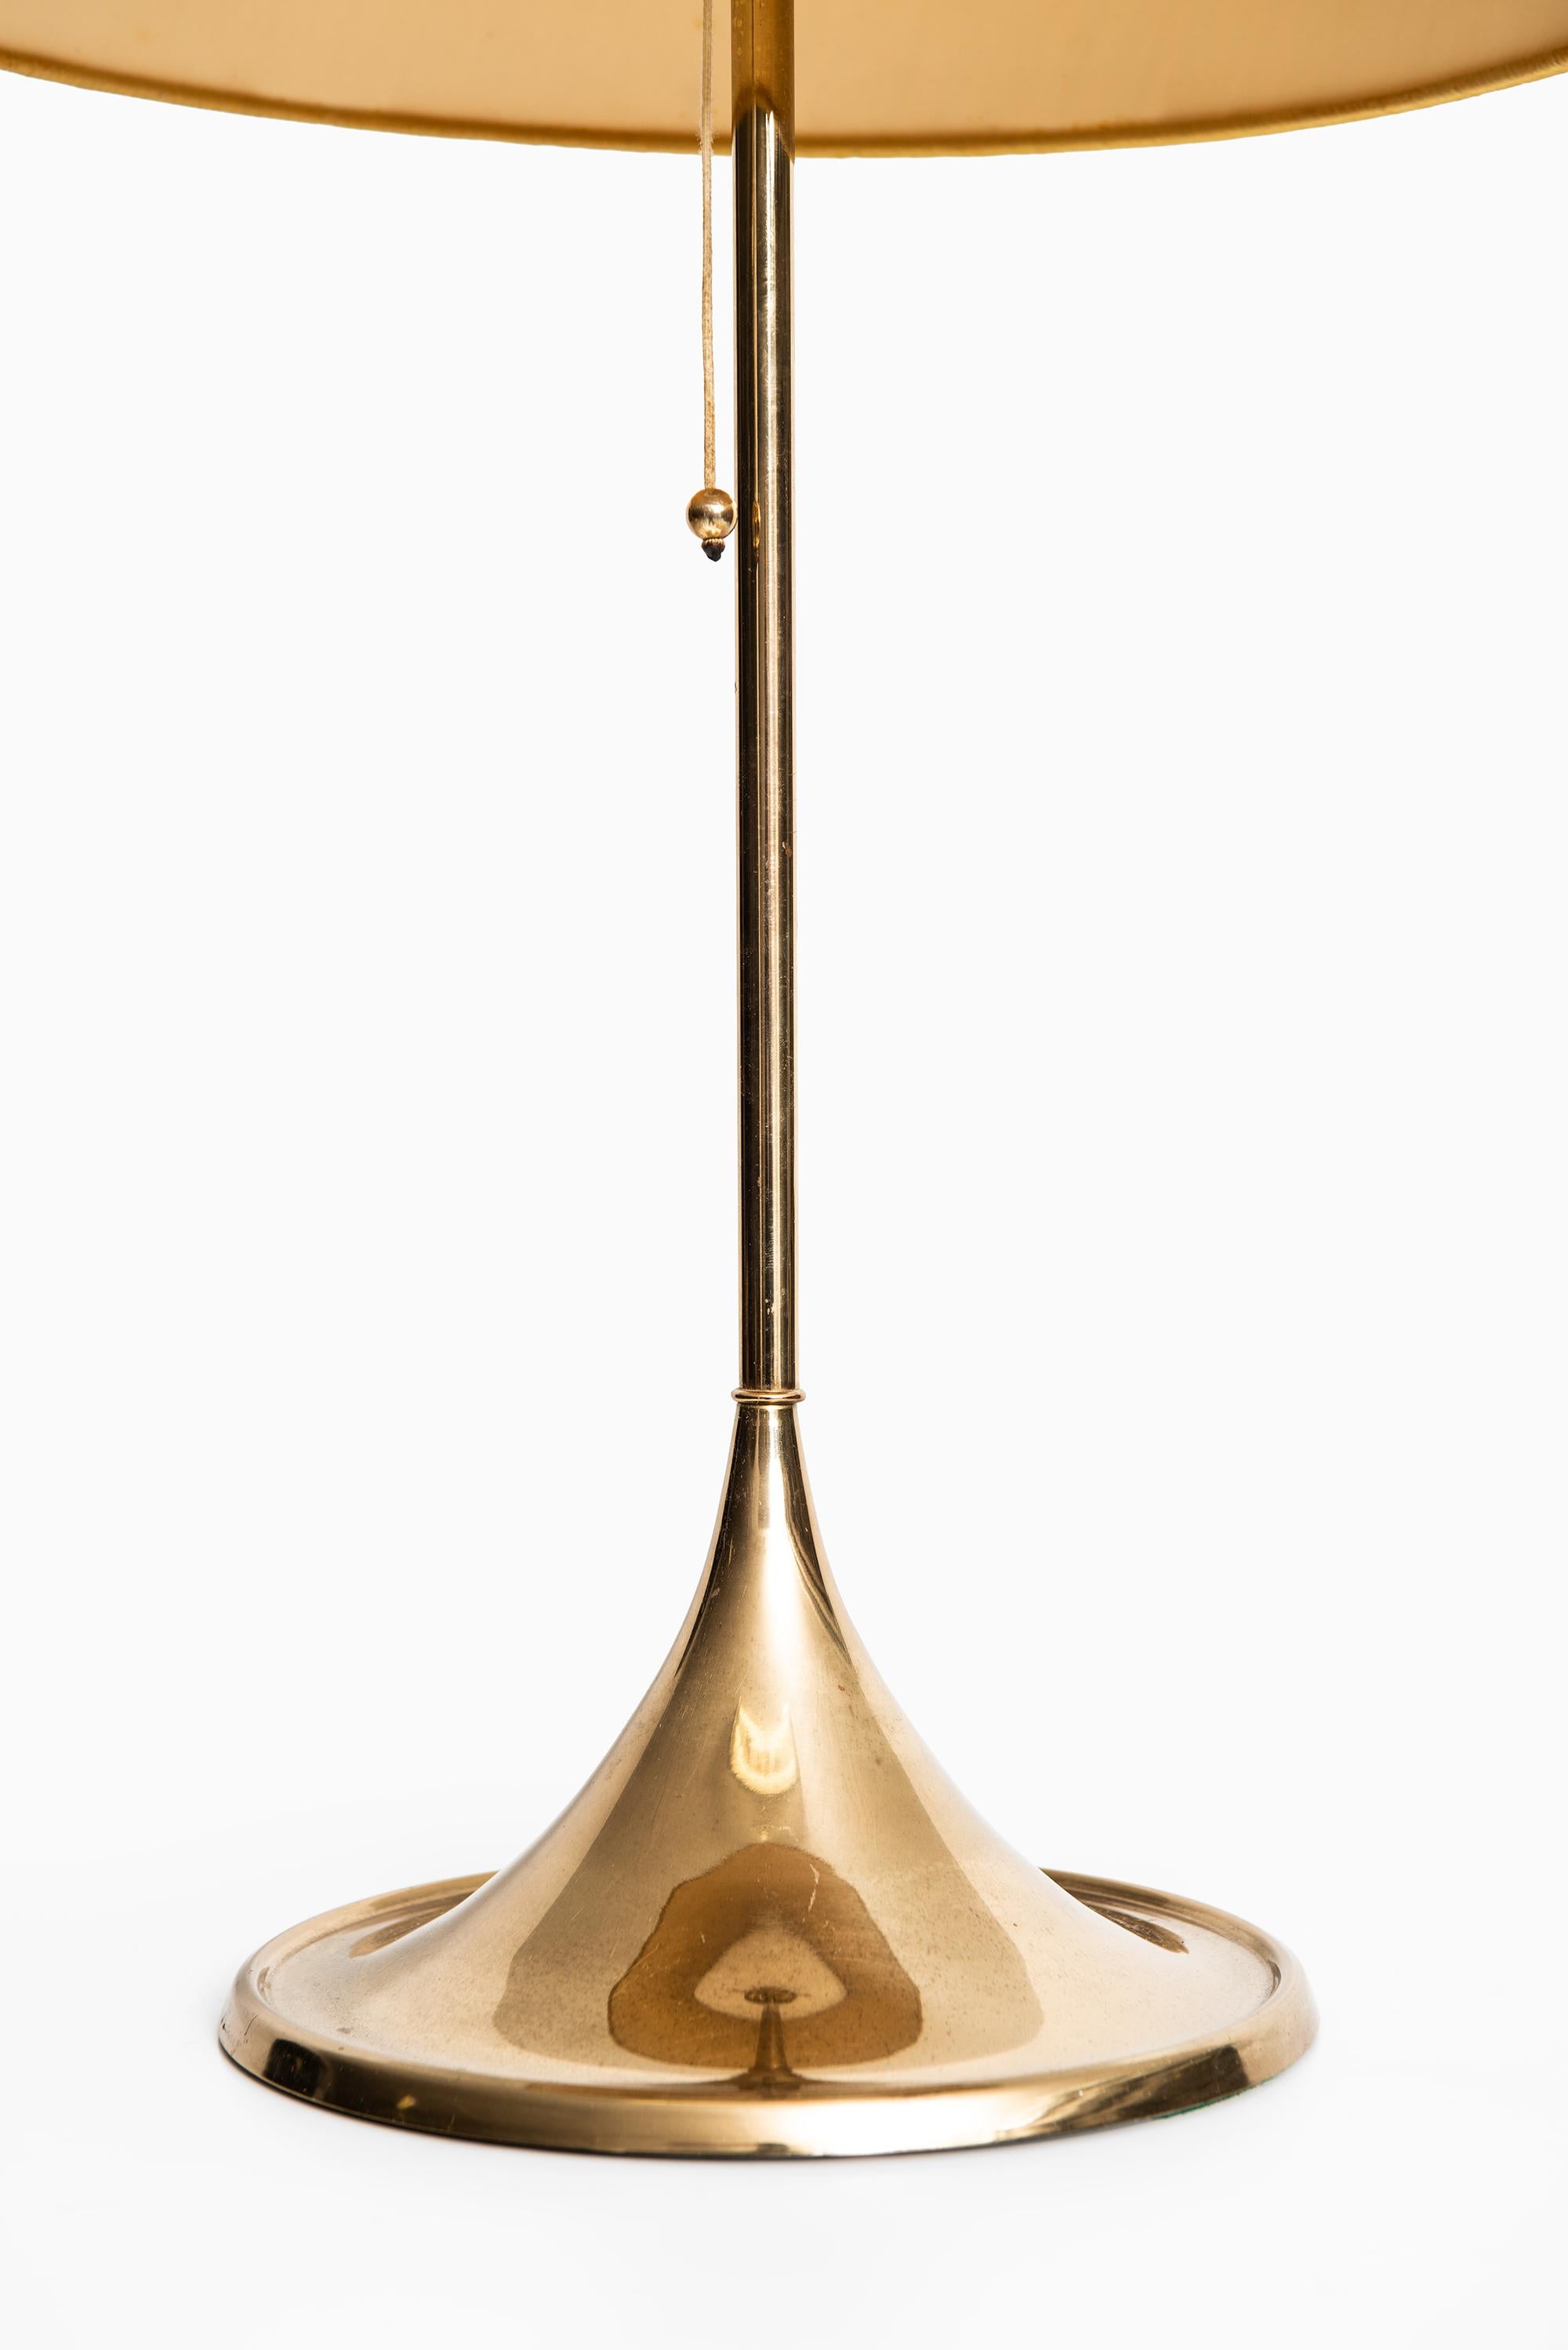 Scandinavian Modern Table Lamps Model B-024 in Brass Produced by Bergbom in Sweden